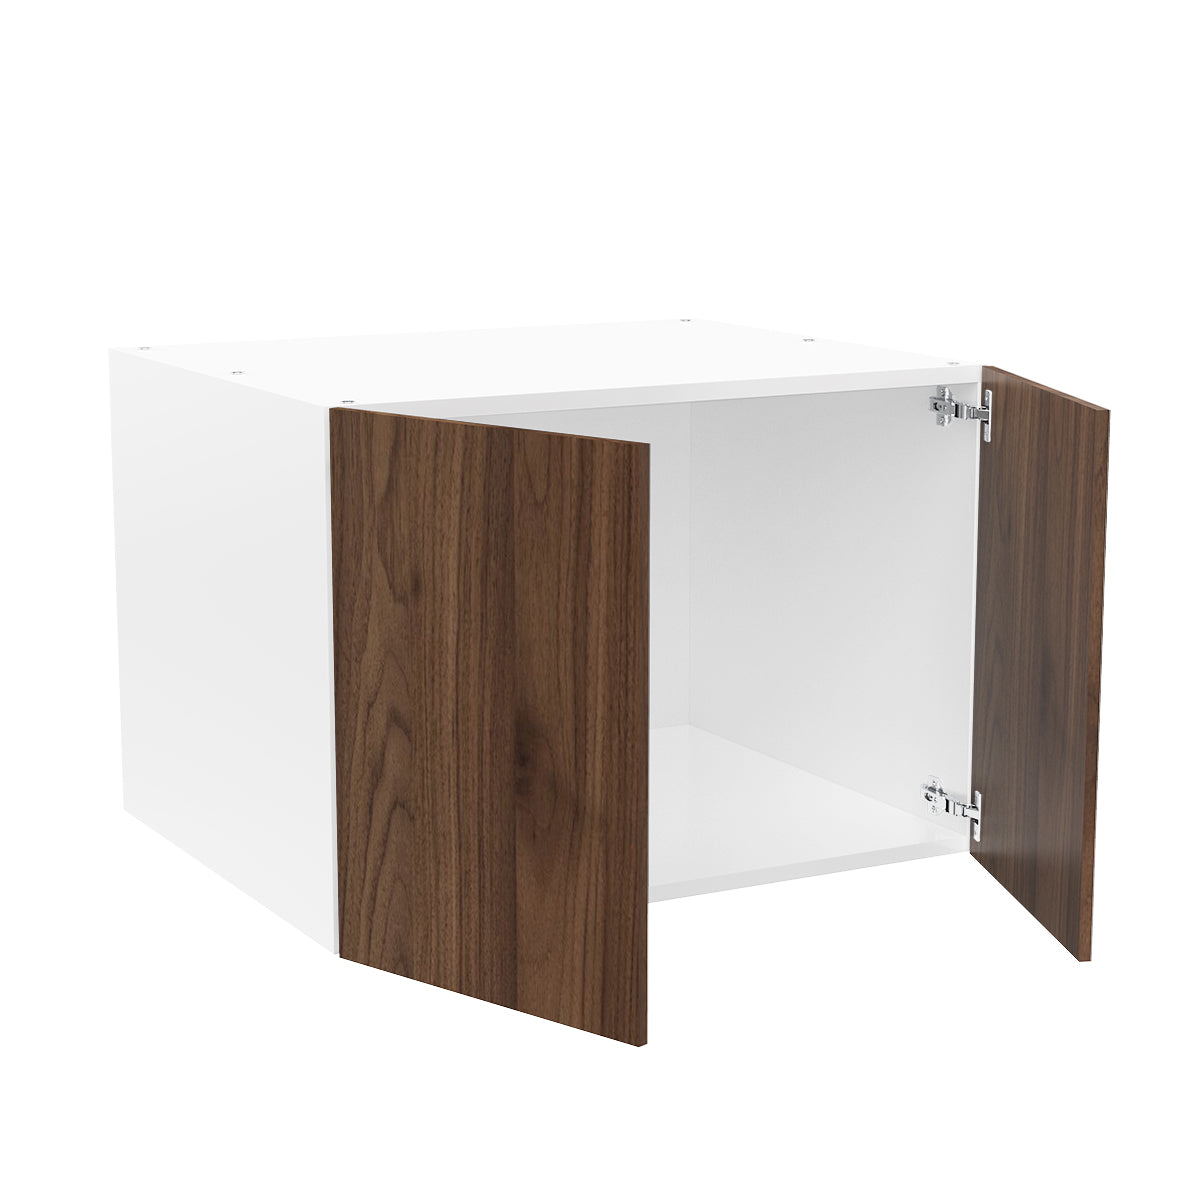 RTA - Walnut - Double Door Refrigerator Wall Cabinets | 30"W x 21"H x 24"D